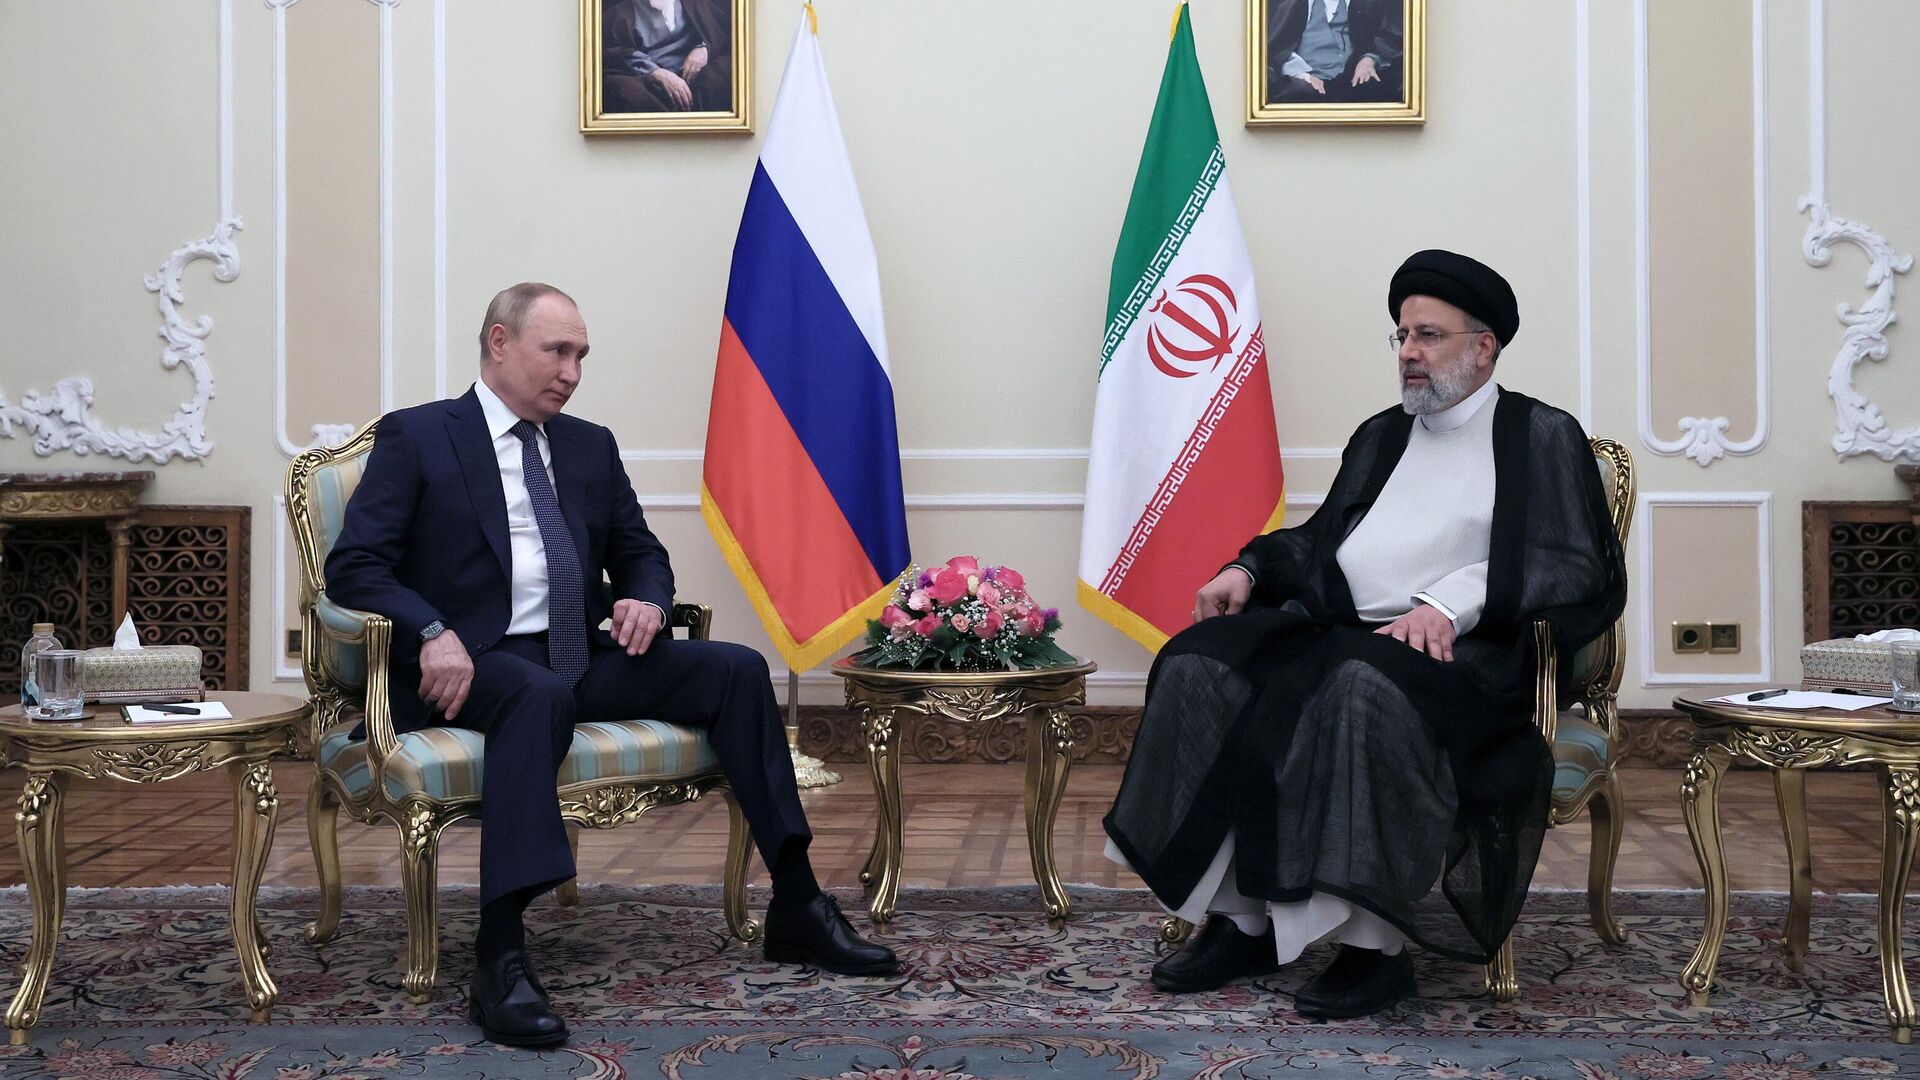 Ο Ρώσος Πρόεδρος Βλαντιμίρ Πούτιν και ο Ιρανός Πρόεδρος Ebrahim Raisi κατά τη διάρκεια συνάντησης στην Τεχεράνη - RIA Novosti, 1920, 20/07/2022